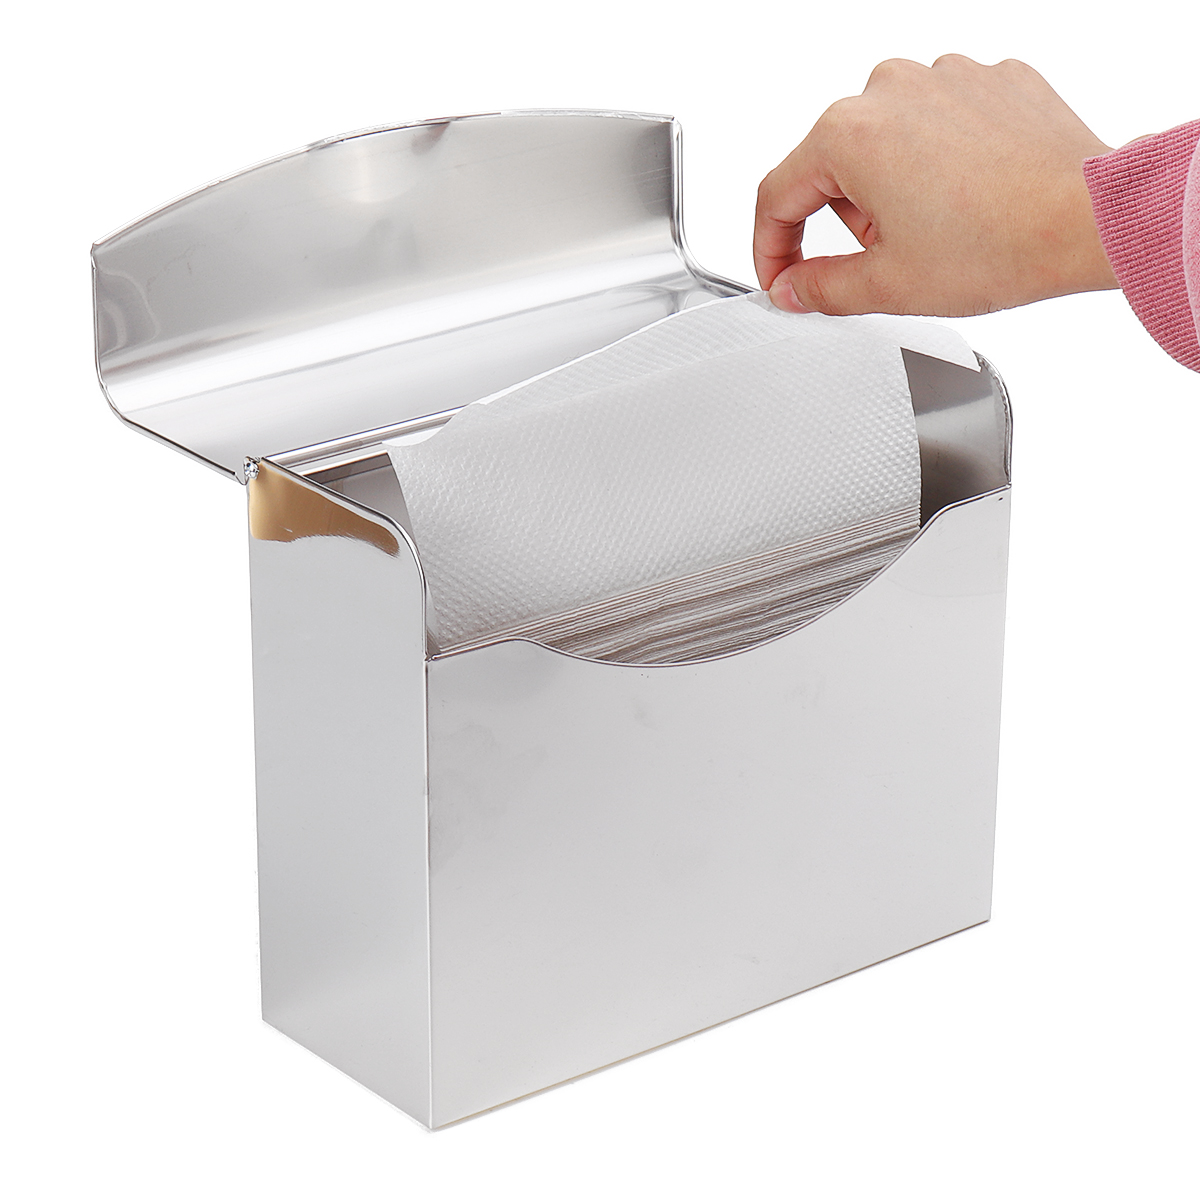 Stainless-Steel-Towel-Dispenser-Toilet-Paper-Holder-Kitchen-Bath-Shelf-Holder-1627018-7